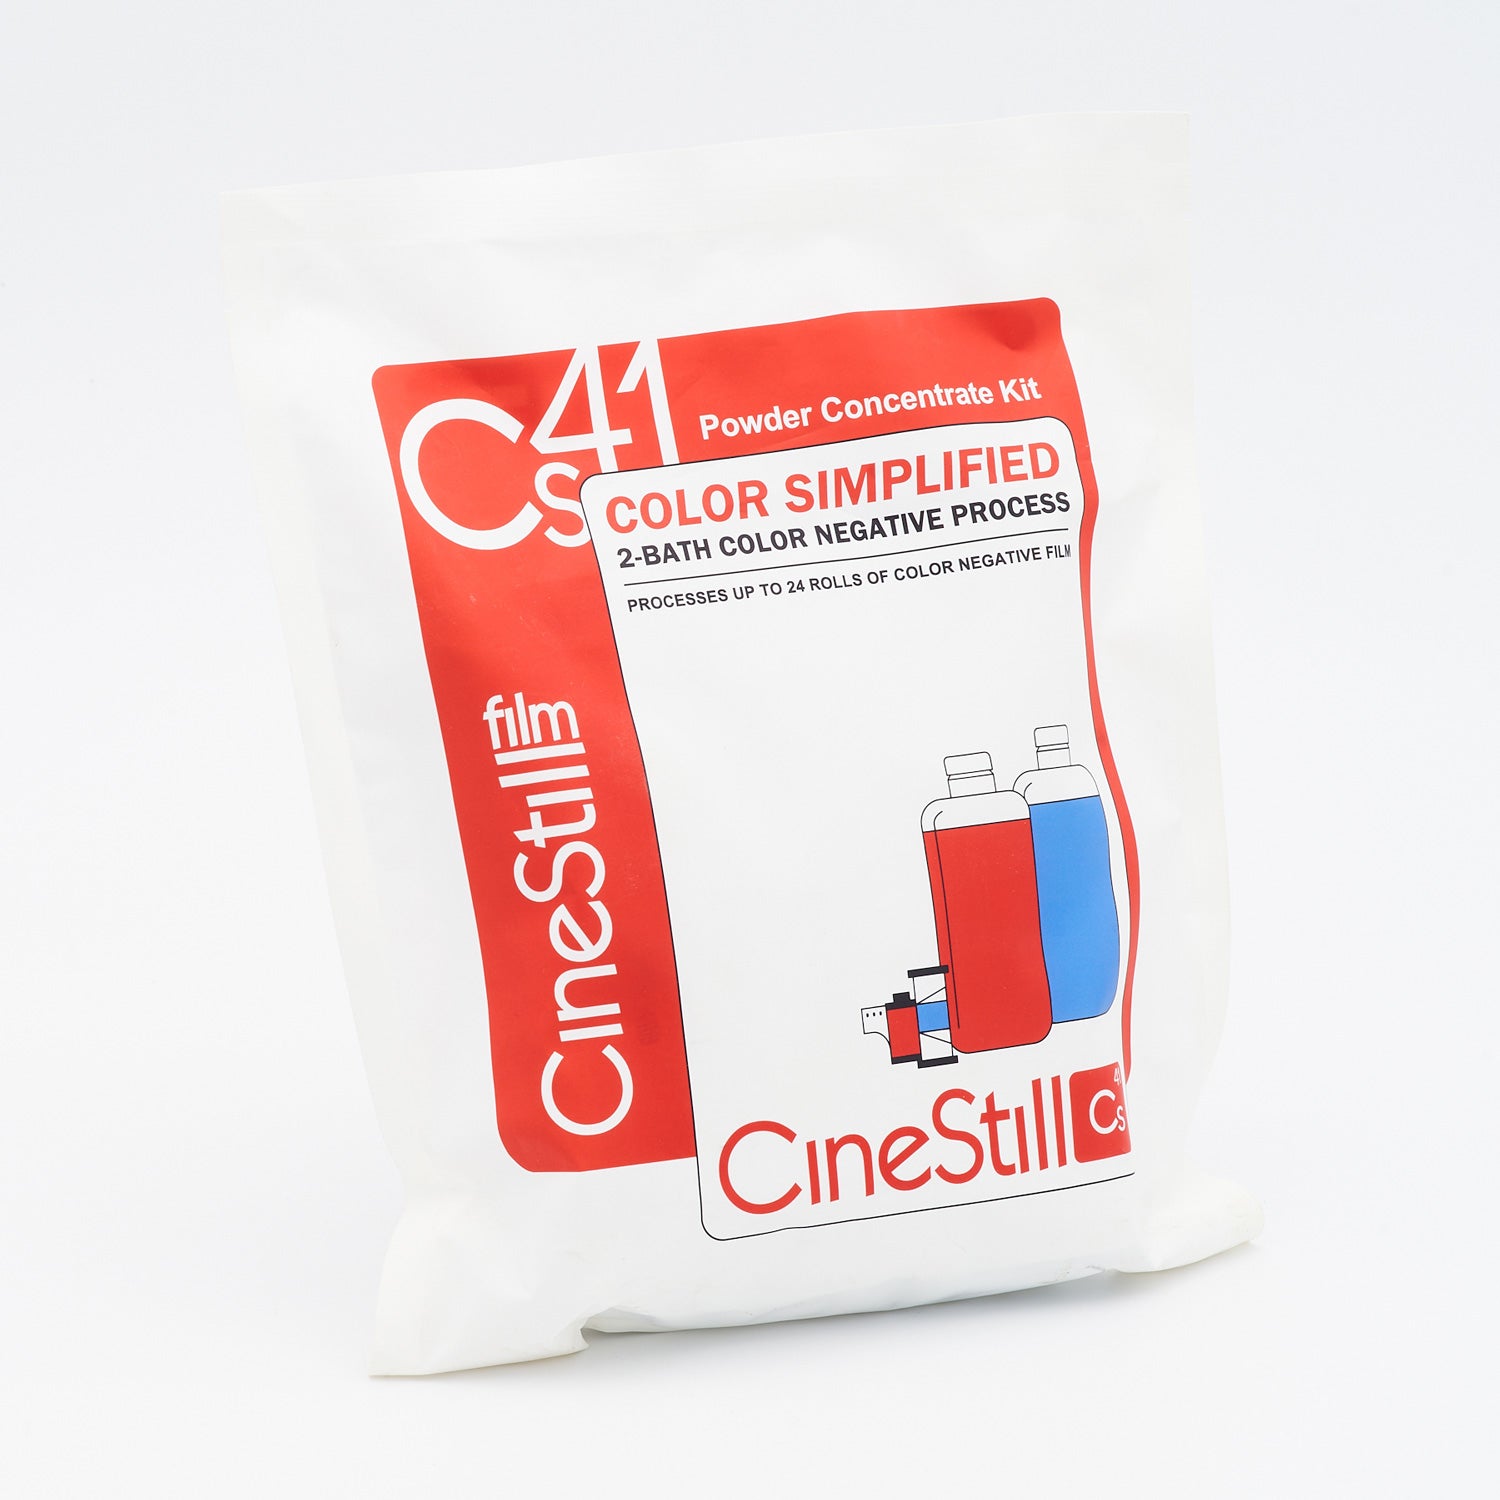 CINESTILL CS41 Color Simplified 2-Bad Powder Kit